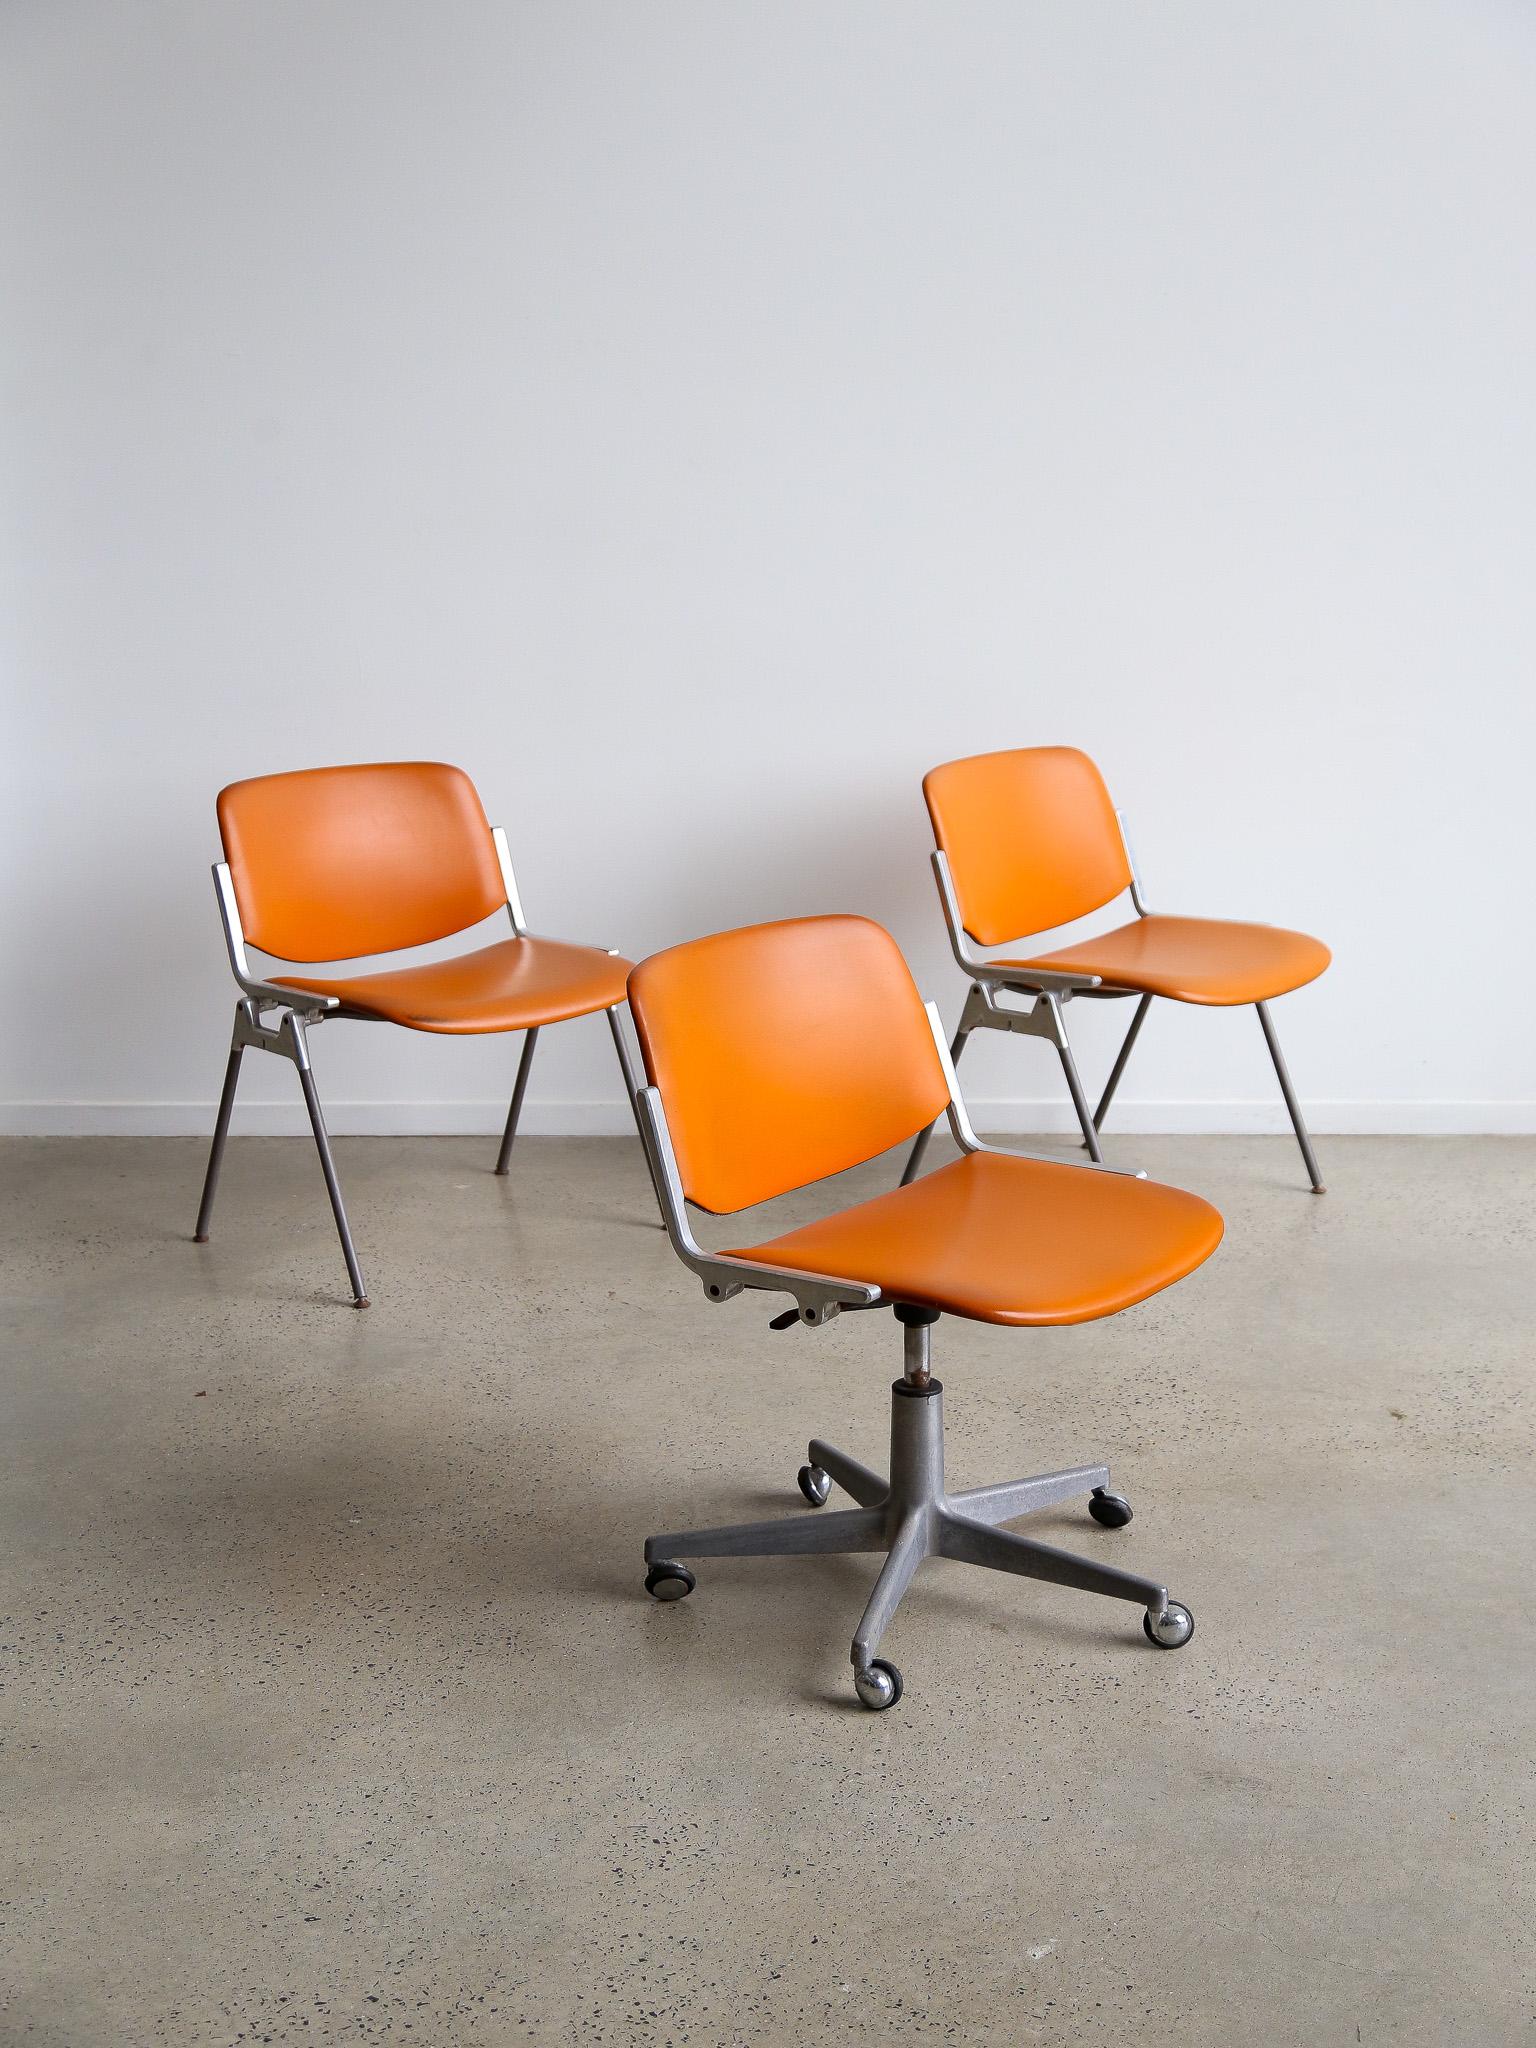 Cet ensemble de deux chaises DSC 106 a été conçu par Giancarlo Piretti pour la société italienne Castelli en 1965. C'est l'un des modèles les plus connus des chaises de la marque et c'est toujours un objet au design innovant et attractif. L'élégante